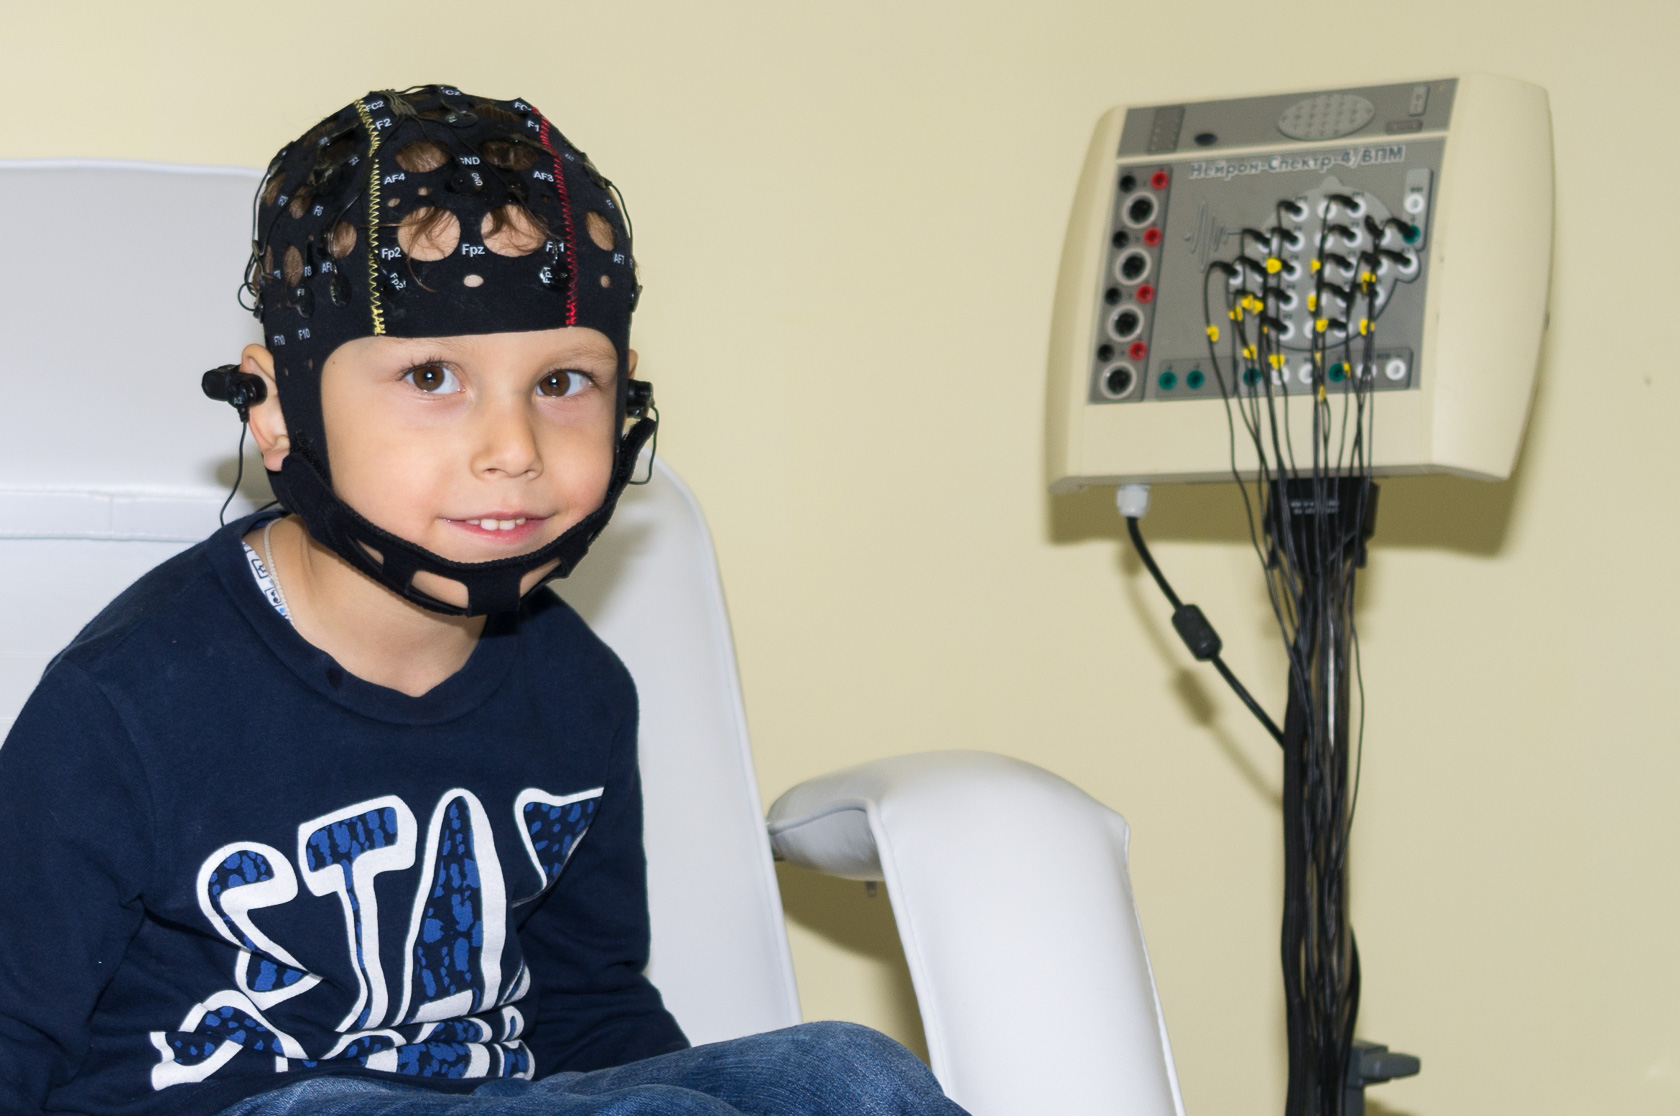 Ээг невролог. Электроэнцефалография головного мозга (ЭЭГ). РЭГ И ЭЭГ. Нейрософт шапочка для ЭЭГ. ЭЭГ детям.